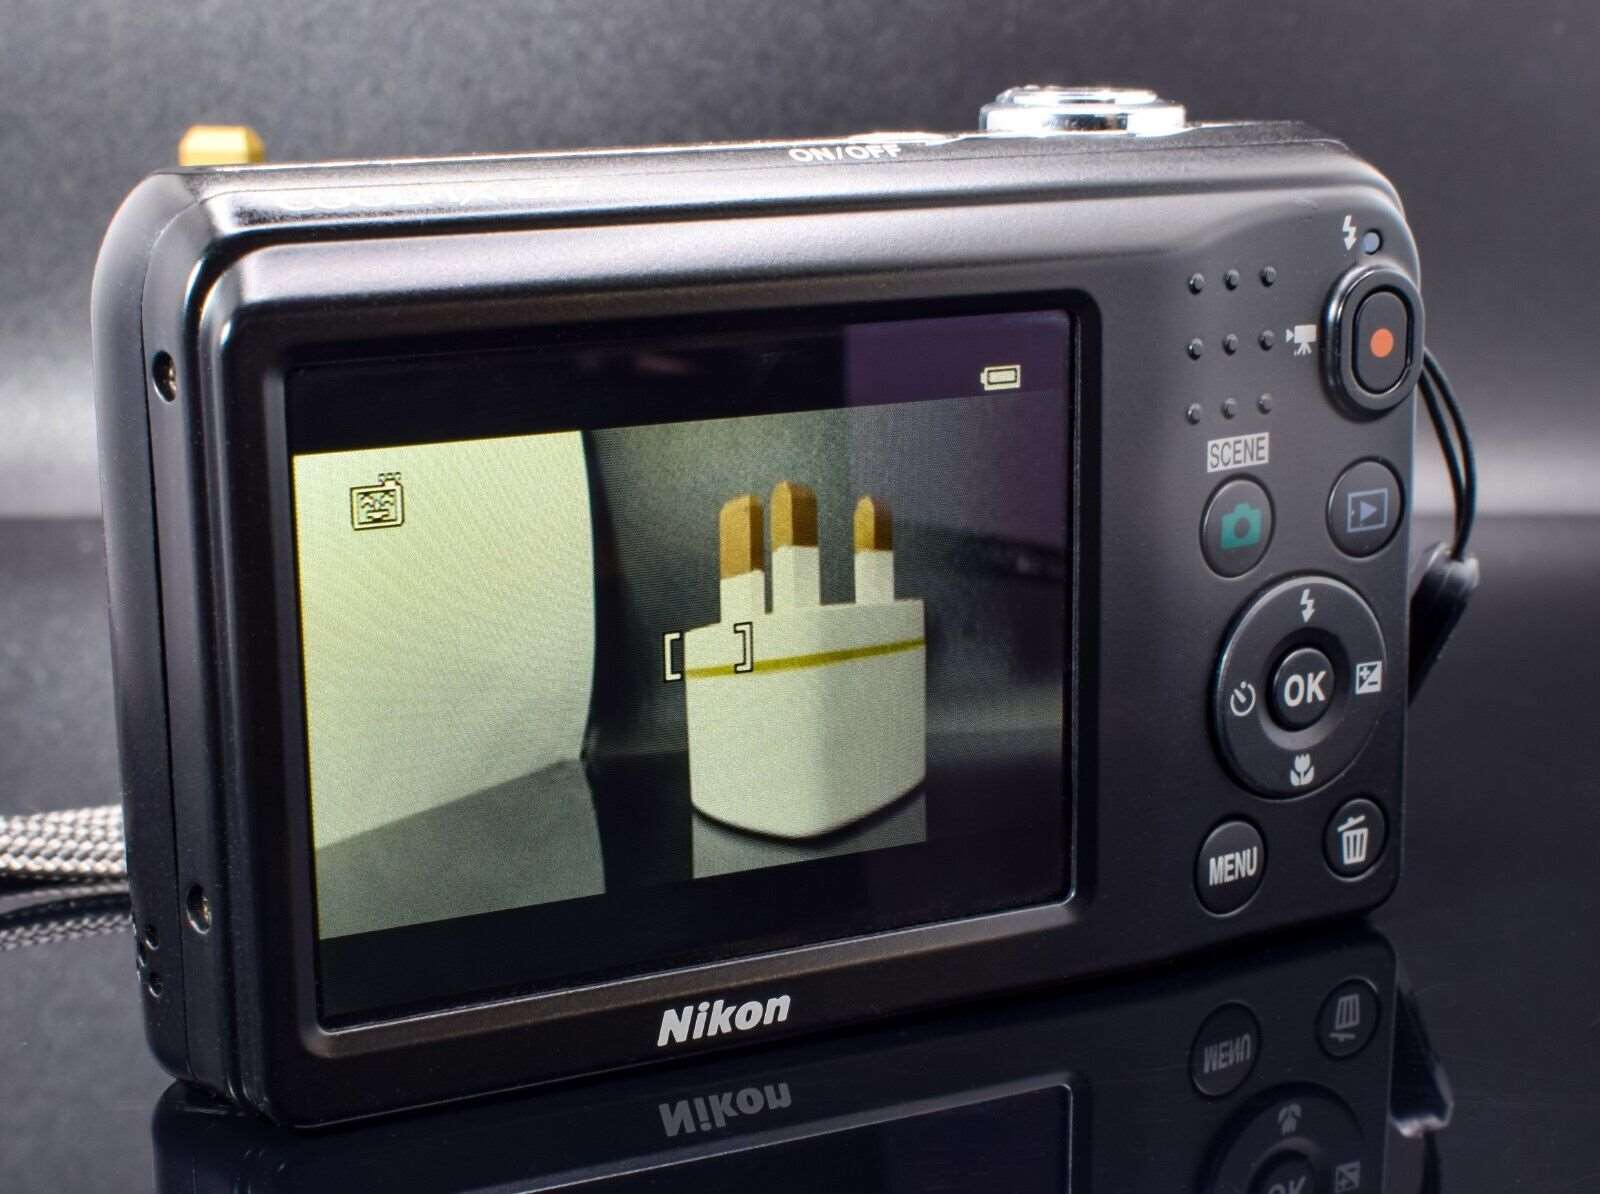 Nikon Digital Camera Coolpix L27 16.1 MP Black Nikkor 4.6-23mm Wide Zoom Lens